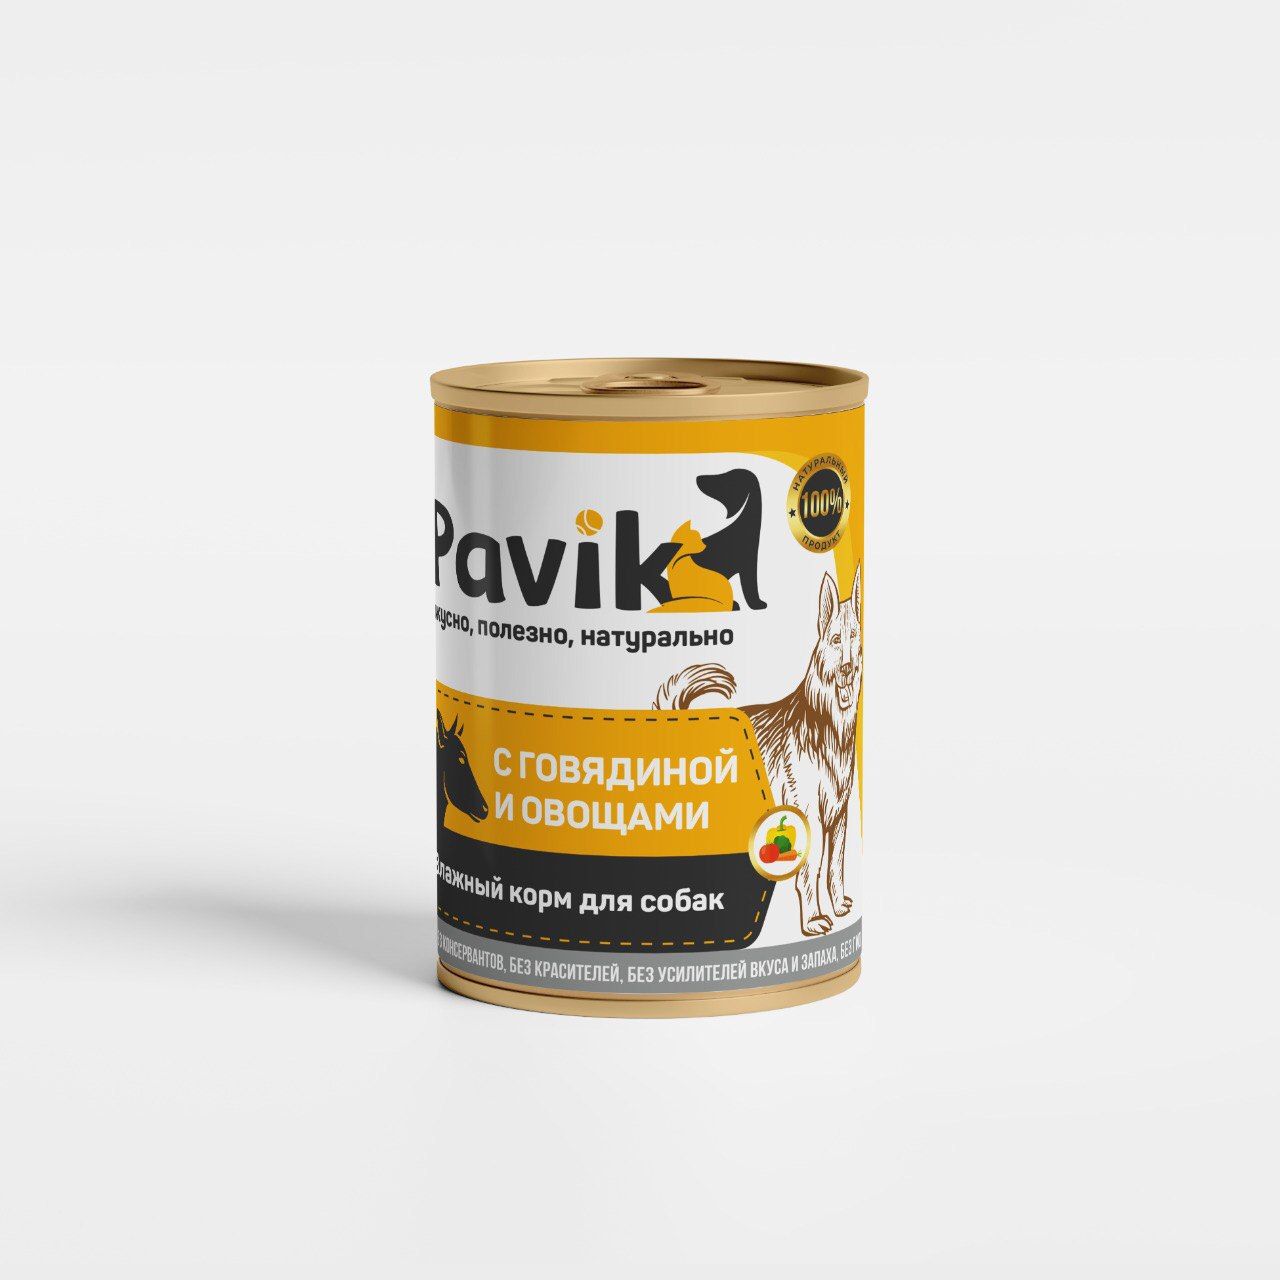 Консервы для собак Pavik с говядиной и овощами, 6шт по 330г